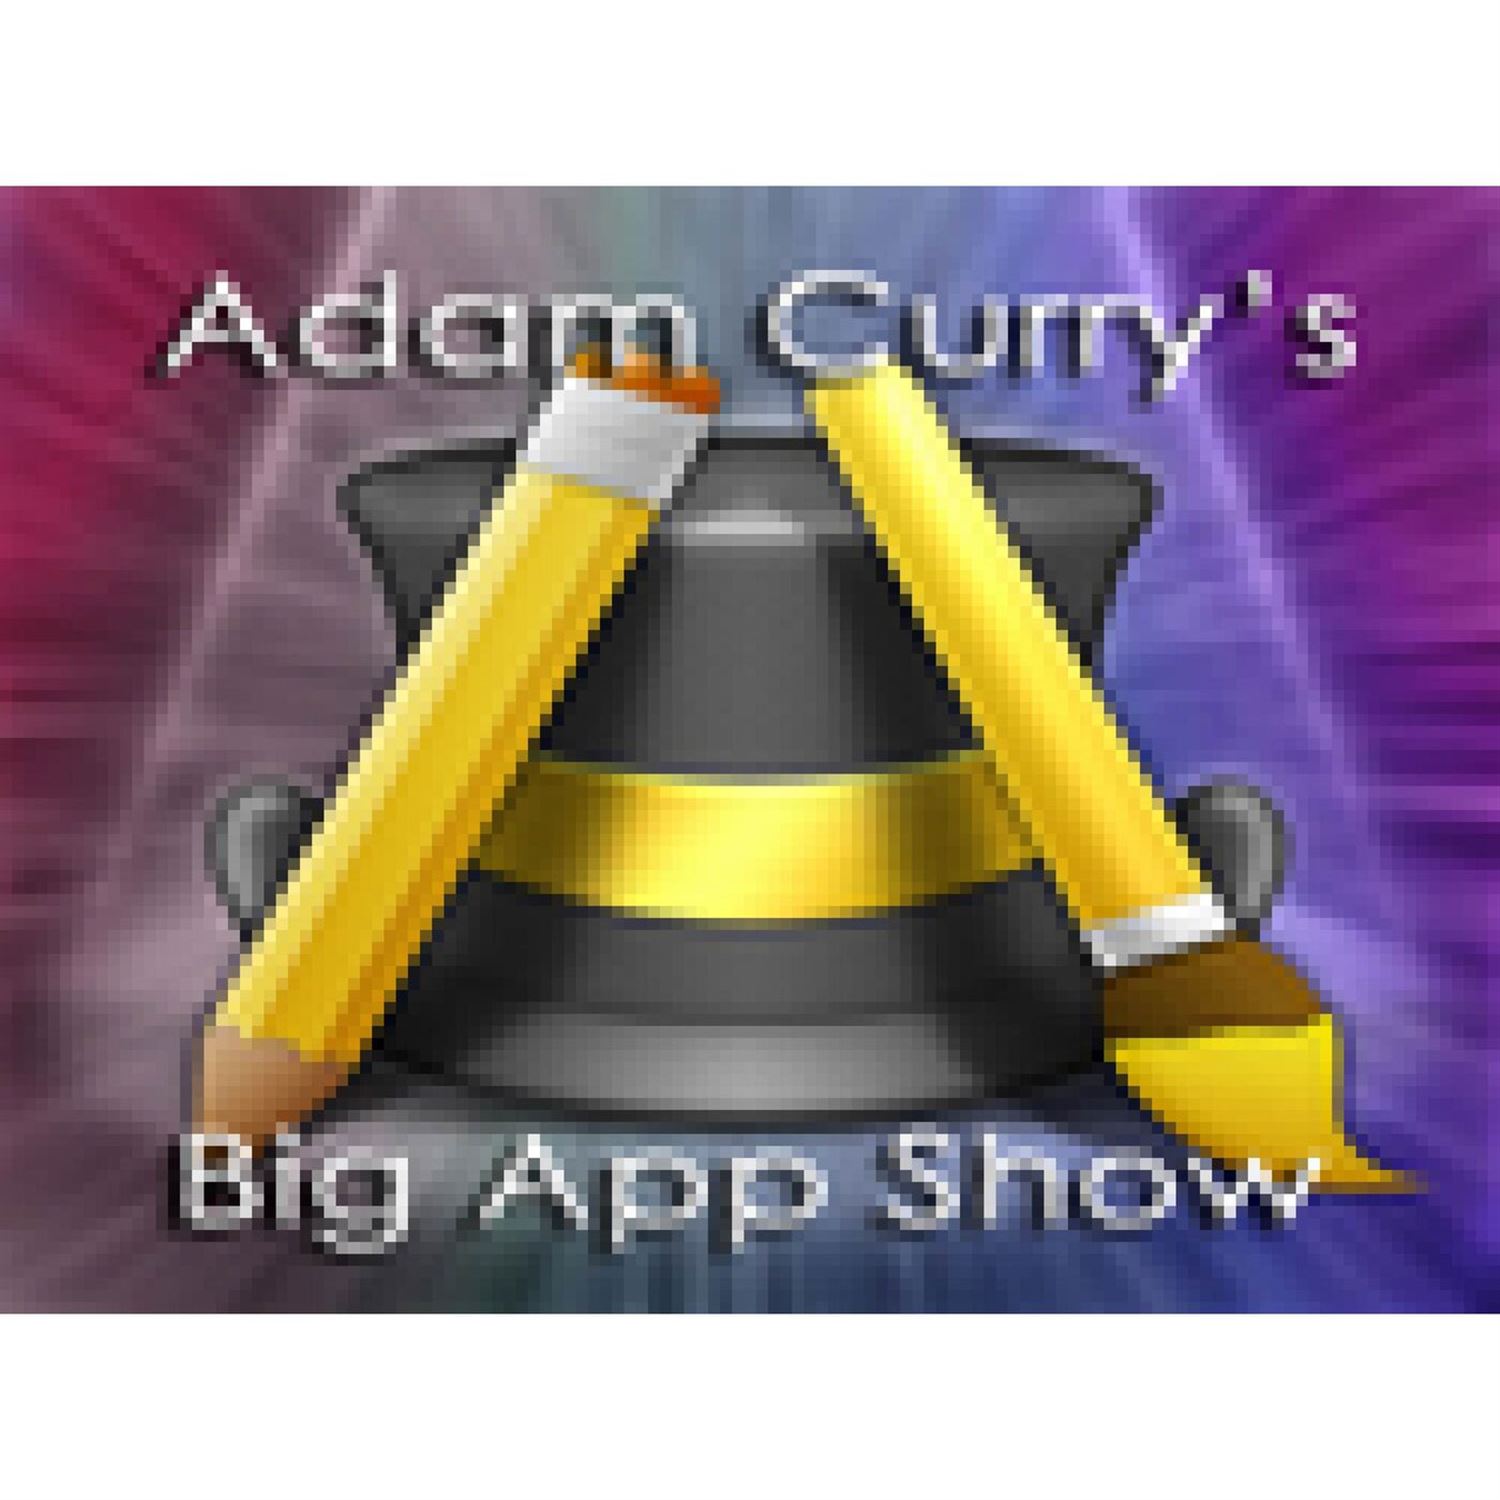 The Big App & Big Book Show